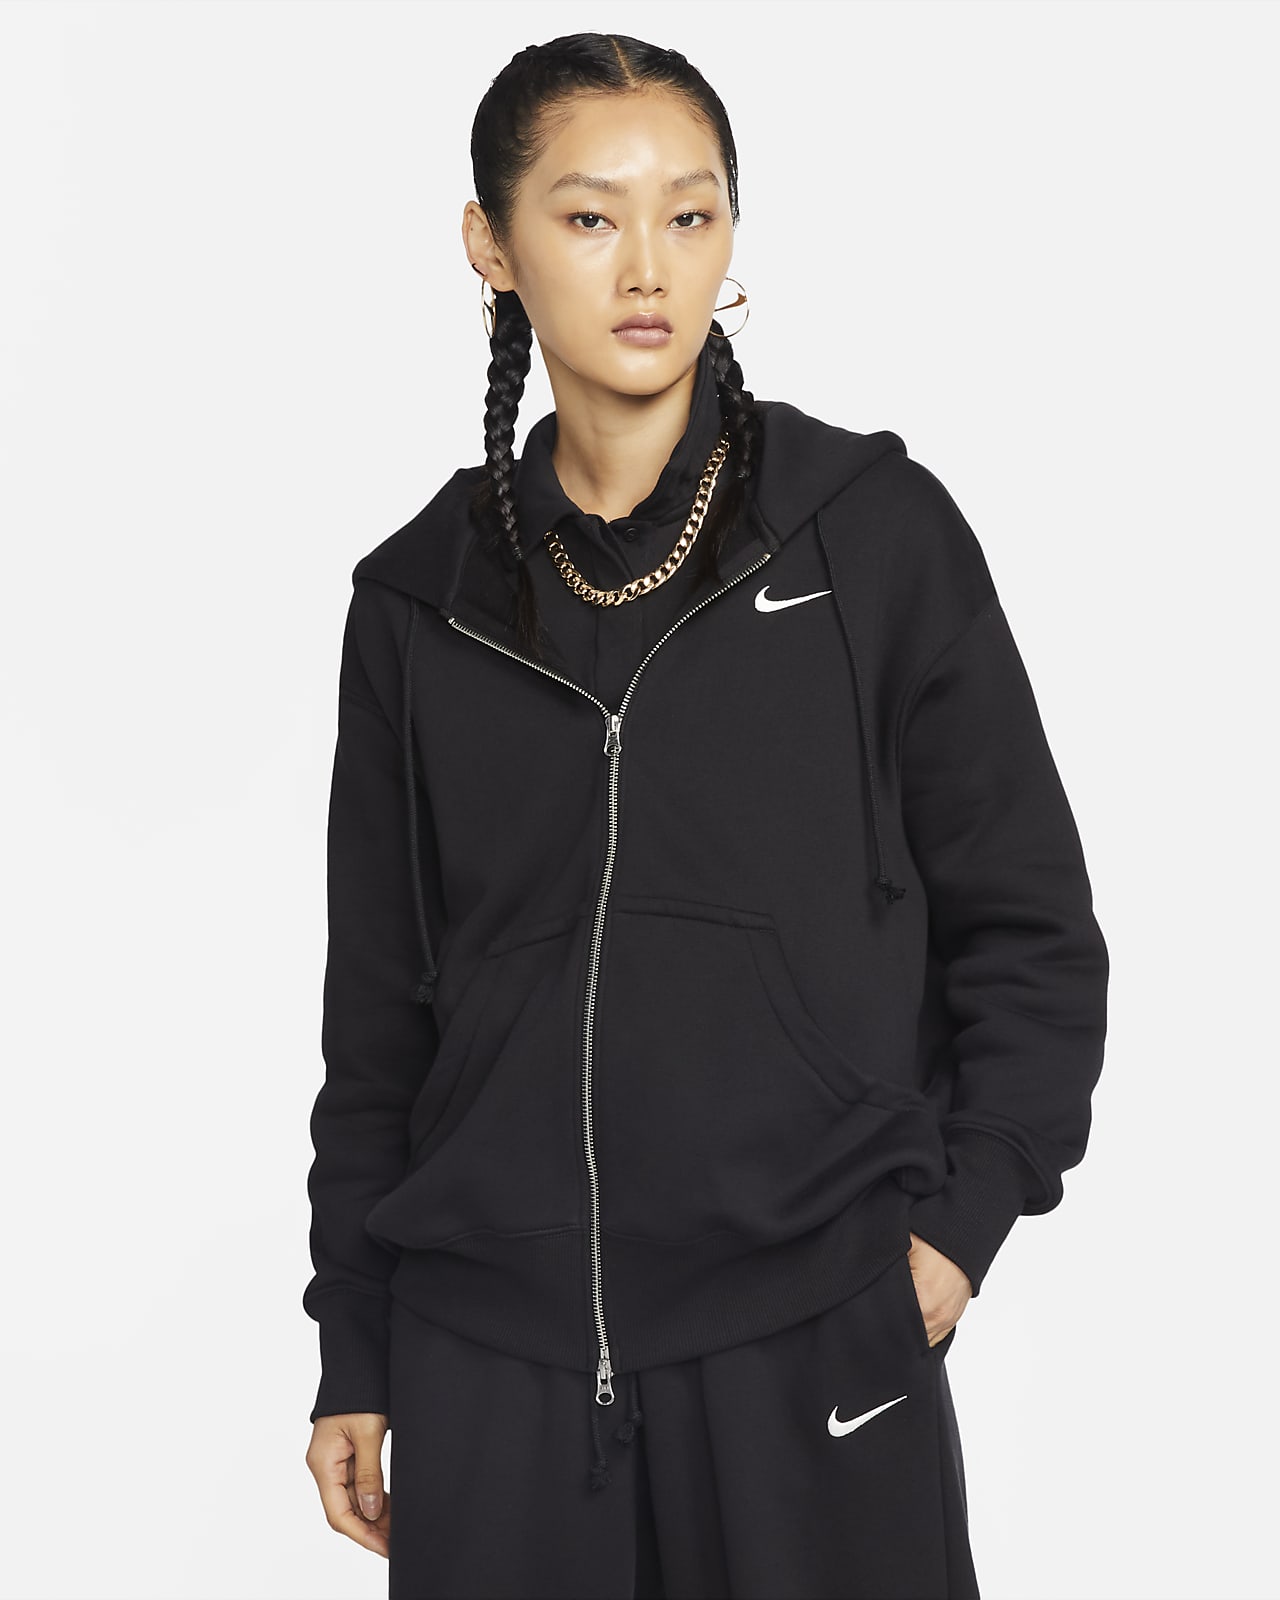 Nike Sportswear Phoenix Fleece Women's Oversized Crew-Neck Logo Sweatshirt.  Nike ID